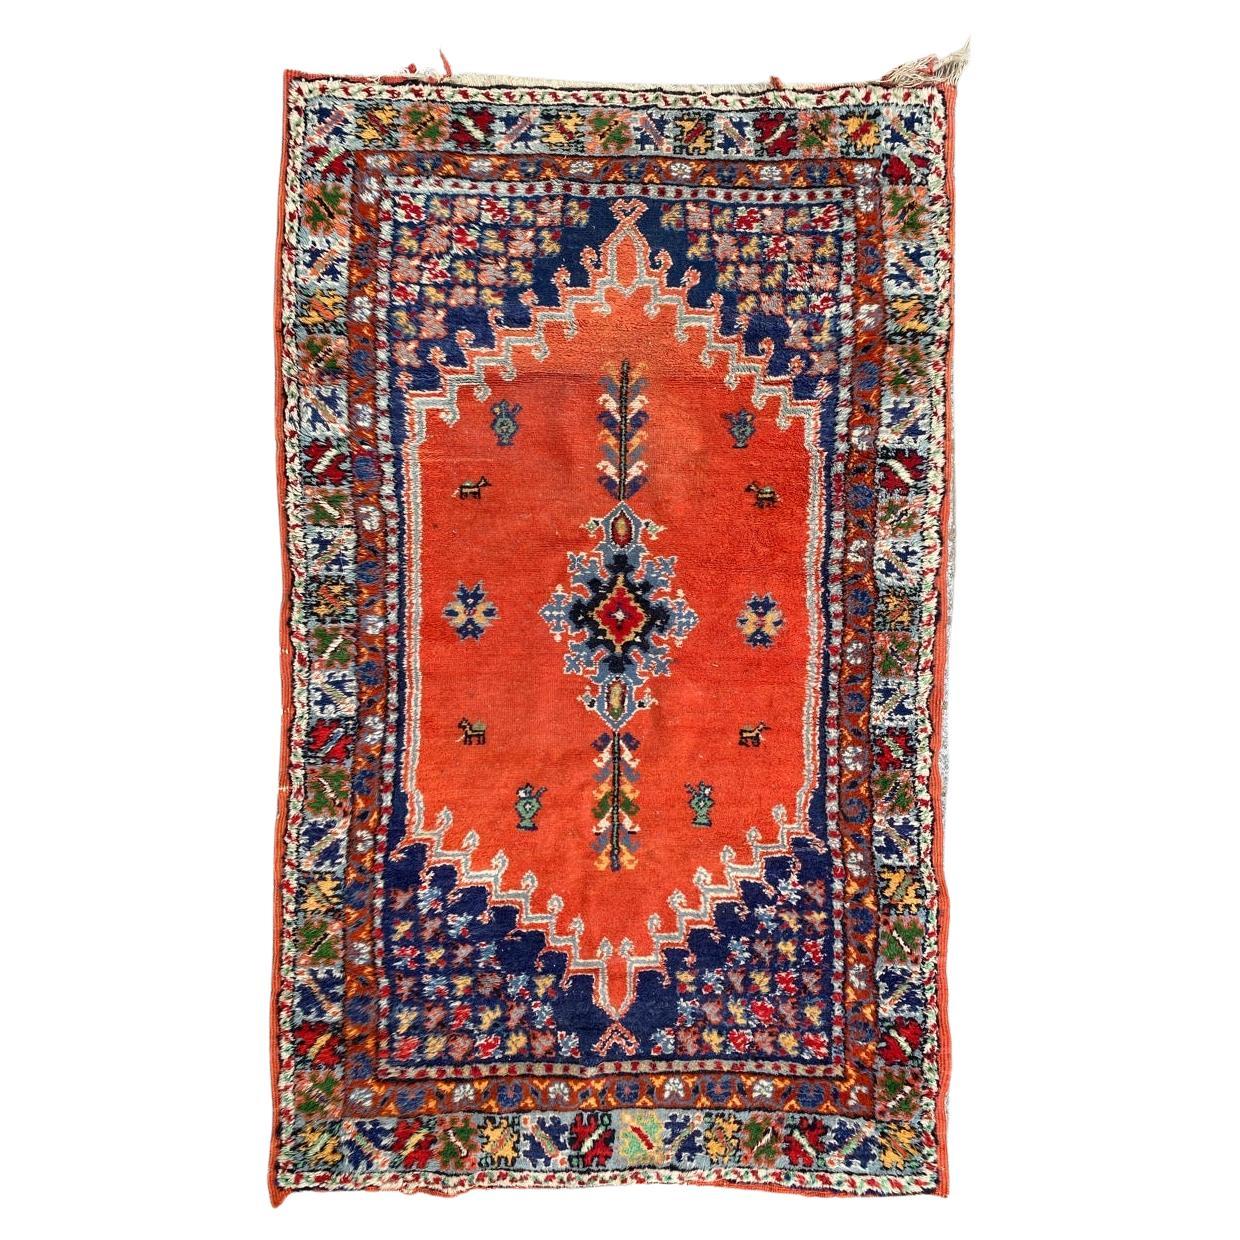 Le joli tapis marocain vintage de Bobyrug